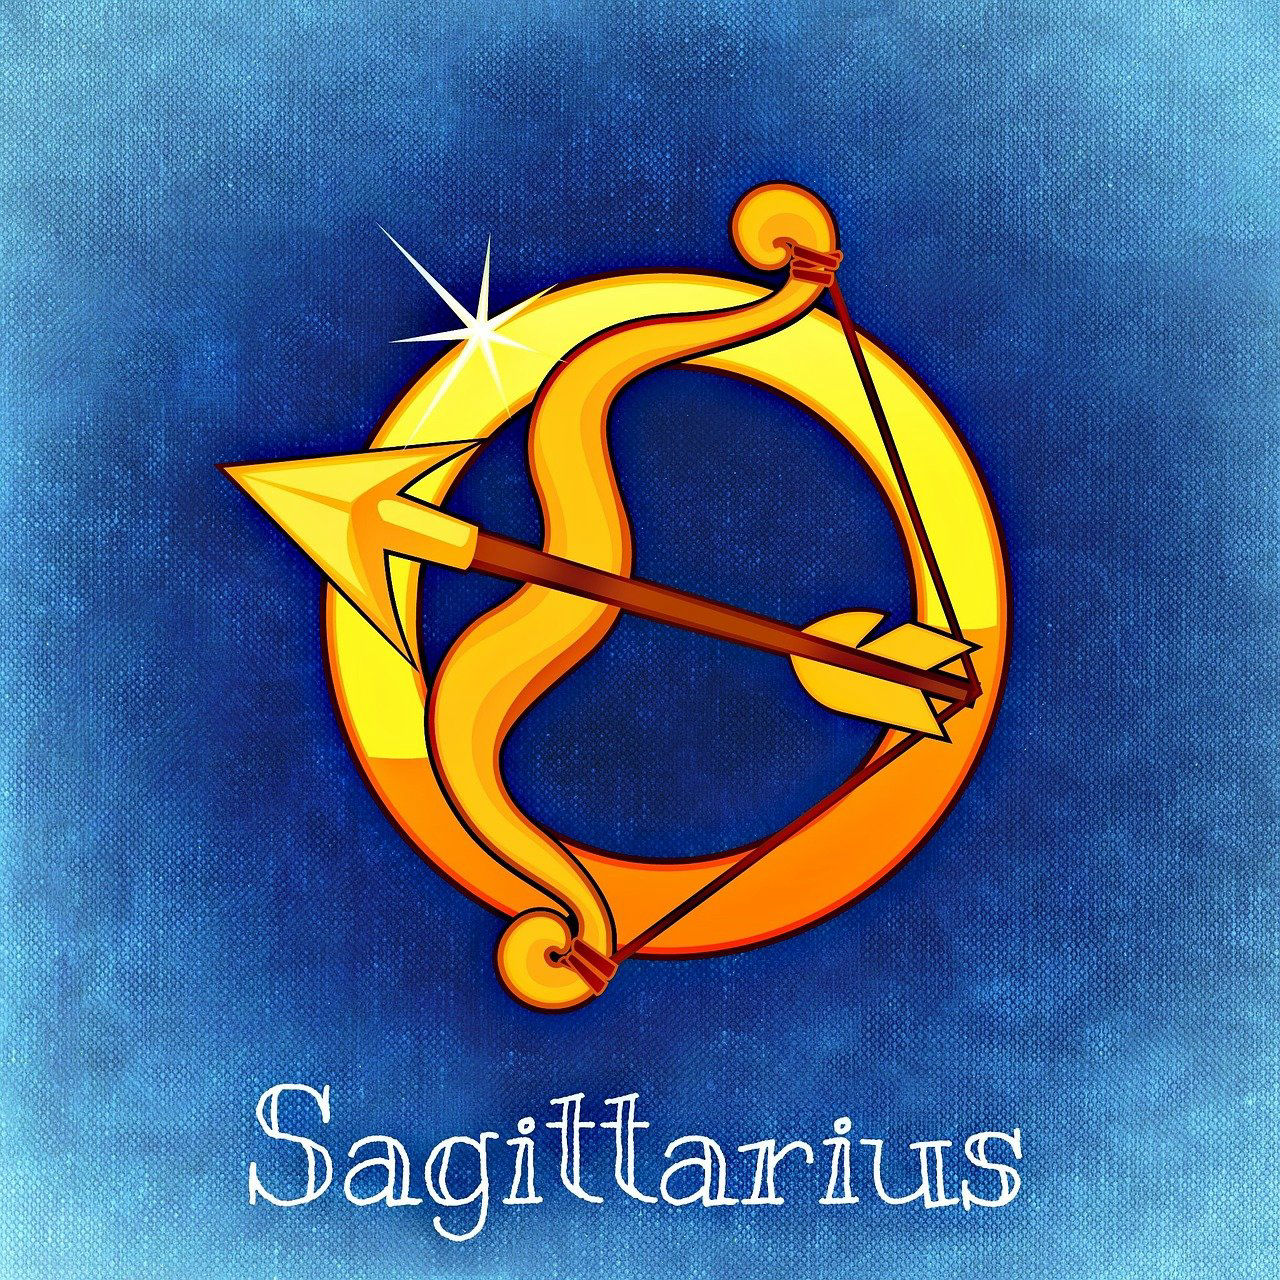 ζώδιο τοξότης, sagittarius